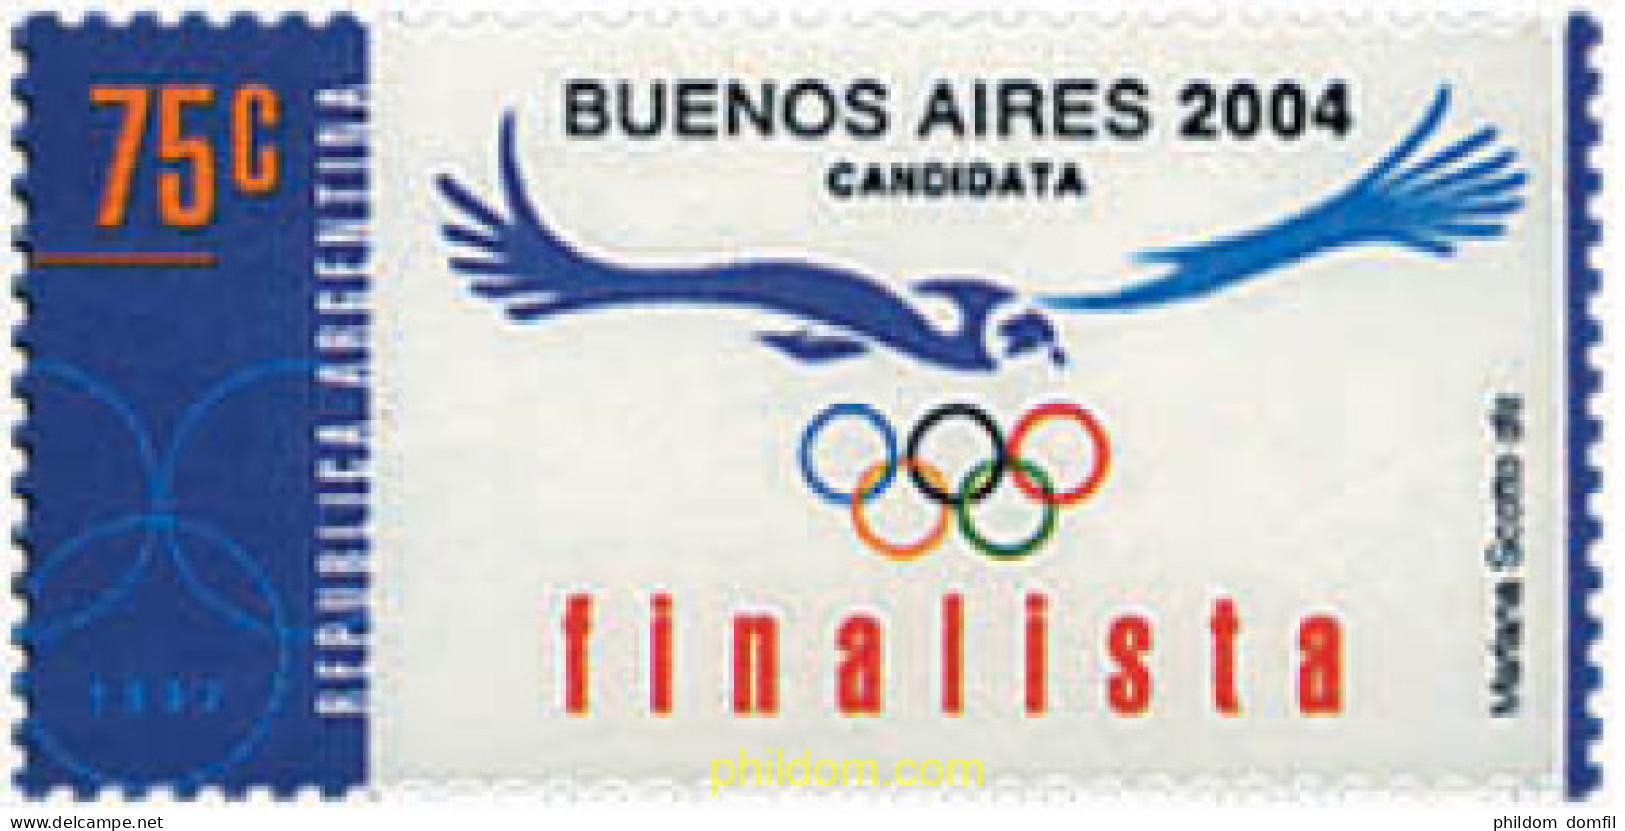 32169 MNH ARGENTINA 1997 CANDIDATURA DE BUENOS AIRES A LOS JUEGOS OLIMPICOS DE 2004 - Neufs